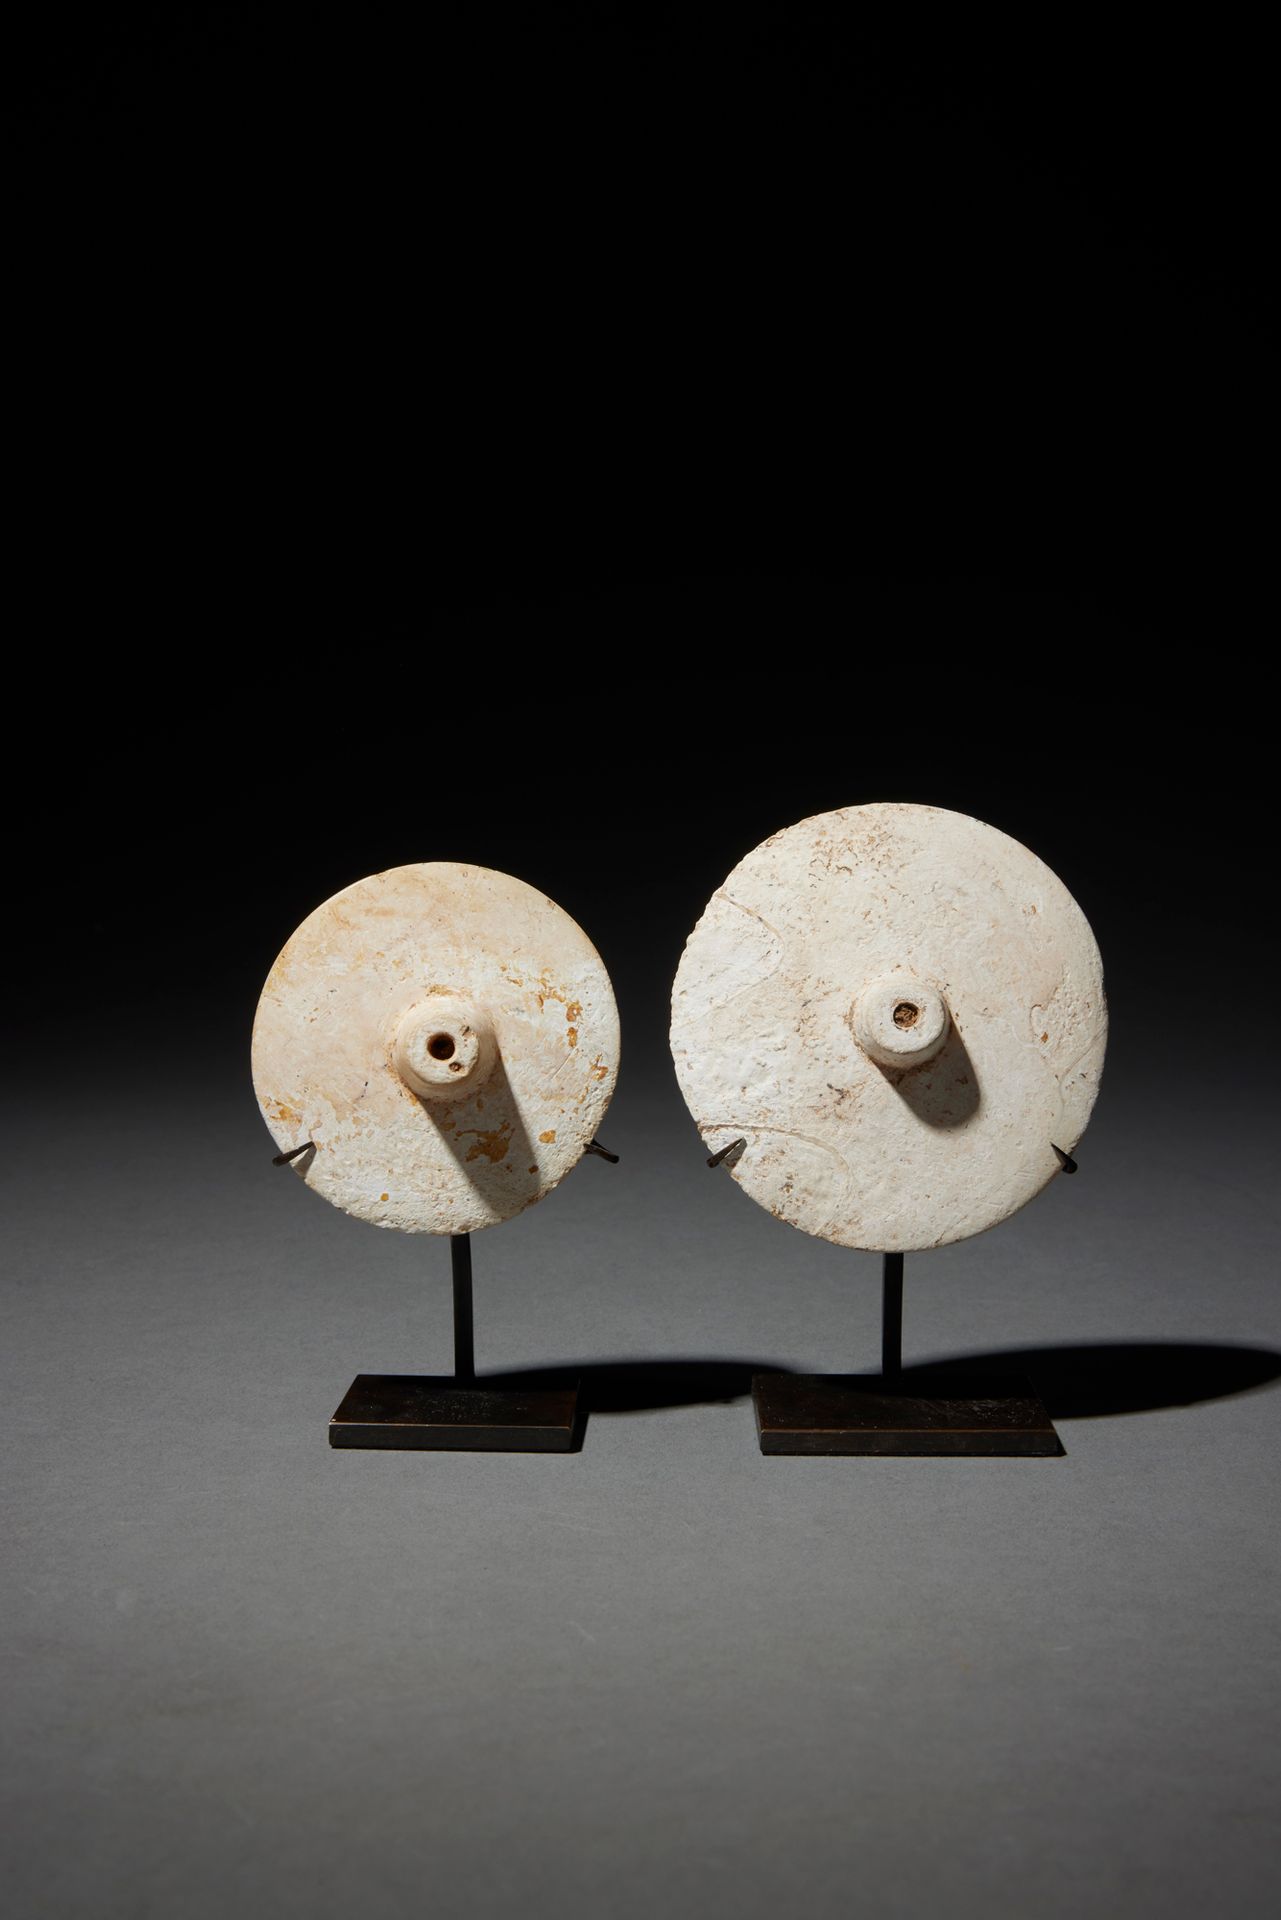 Null 两个装饰品

泰国

壳体

D. 5,5和7厘米



一套两个新石器时代的圆盘形装饰品，可能是针头，中间有一个乳头的浮雕。